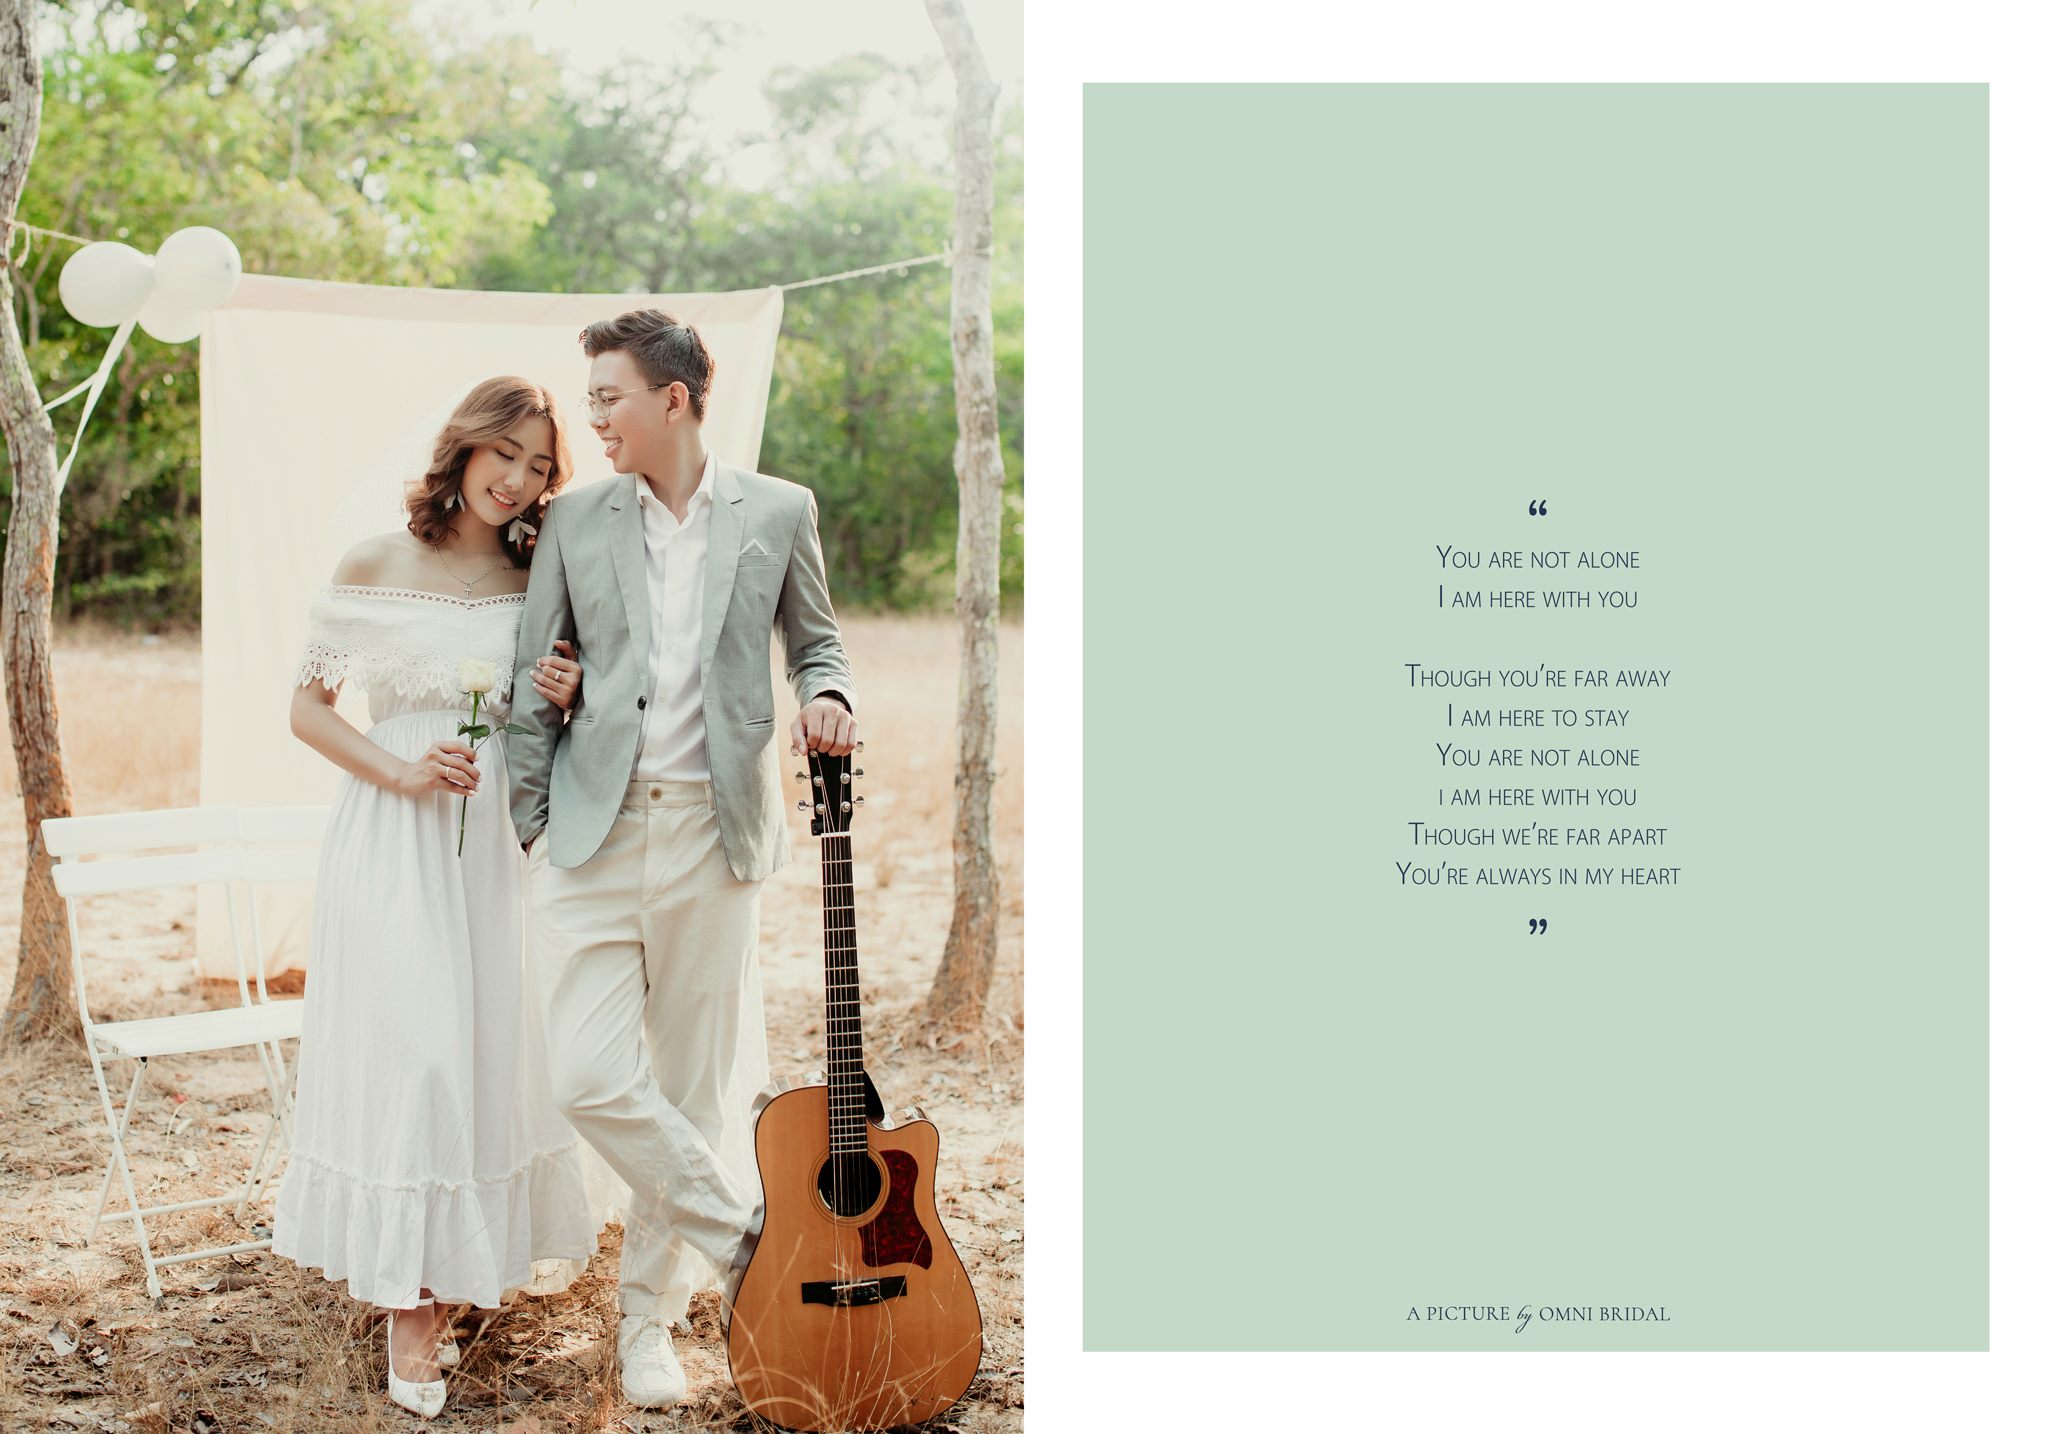 Album cưới By Omni Bridal